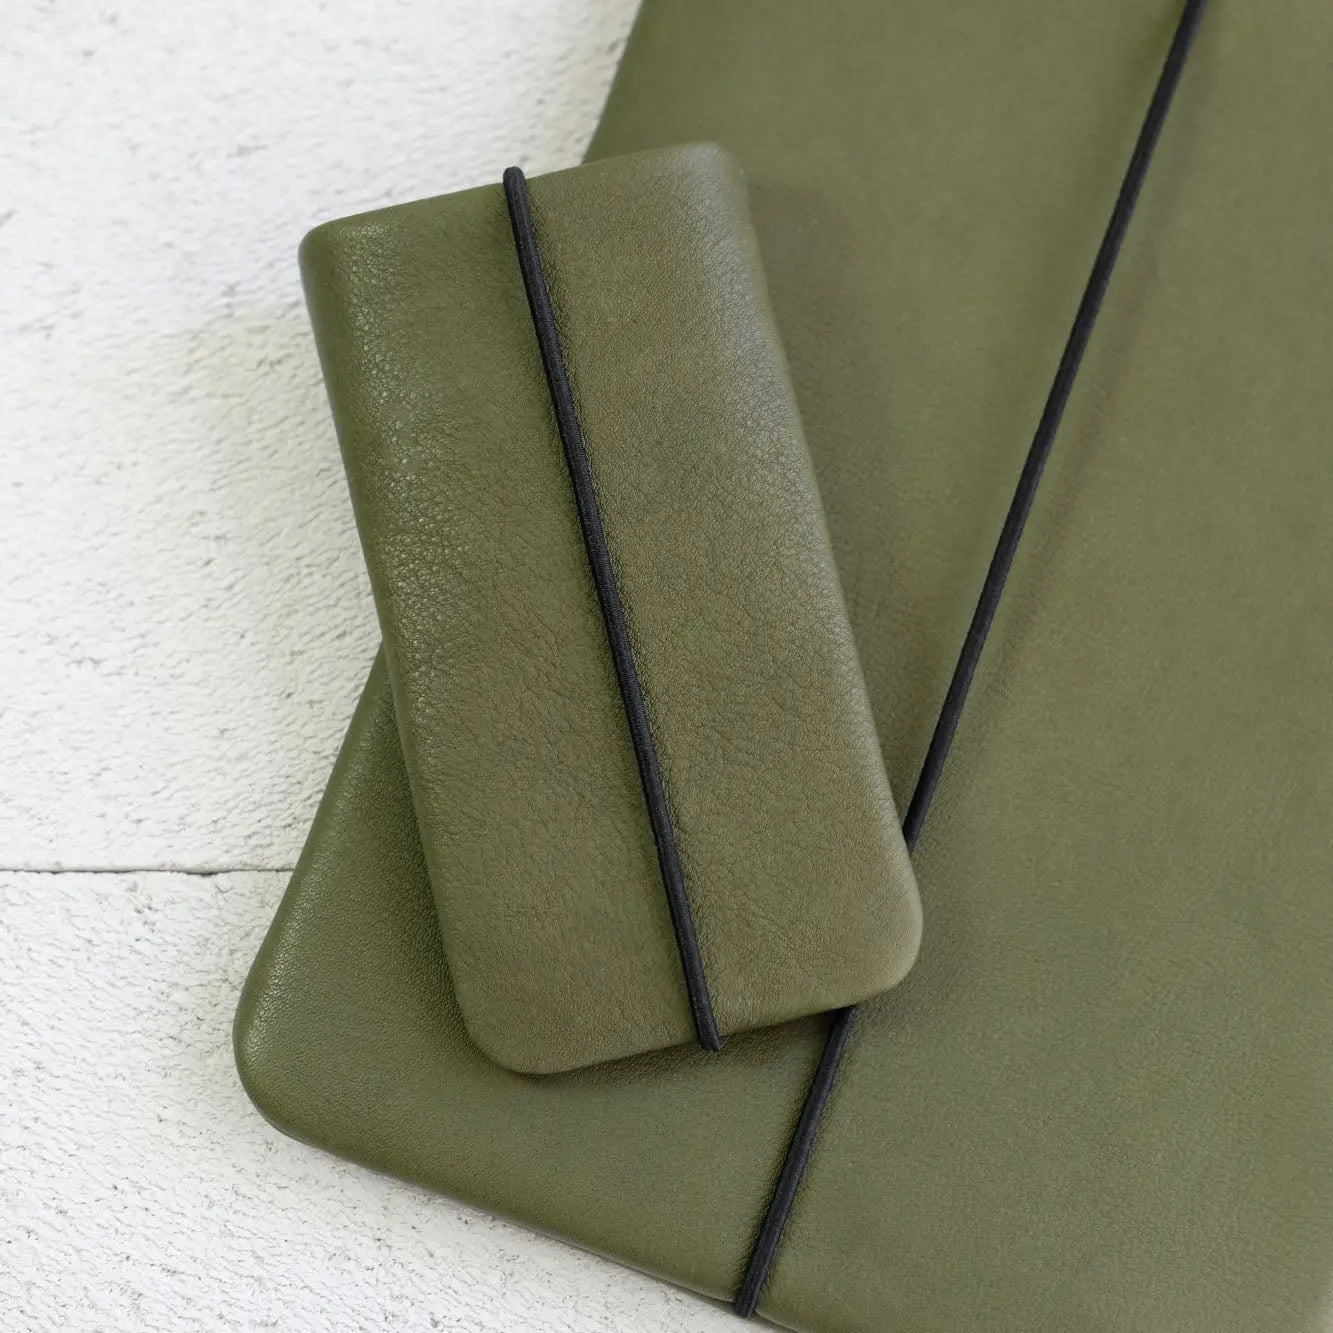 olivgrüne iPhonehülle liegt auf einer passenden Notebooktasche